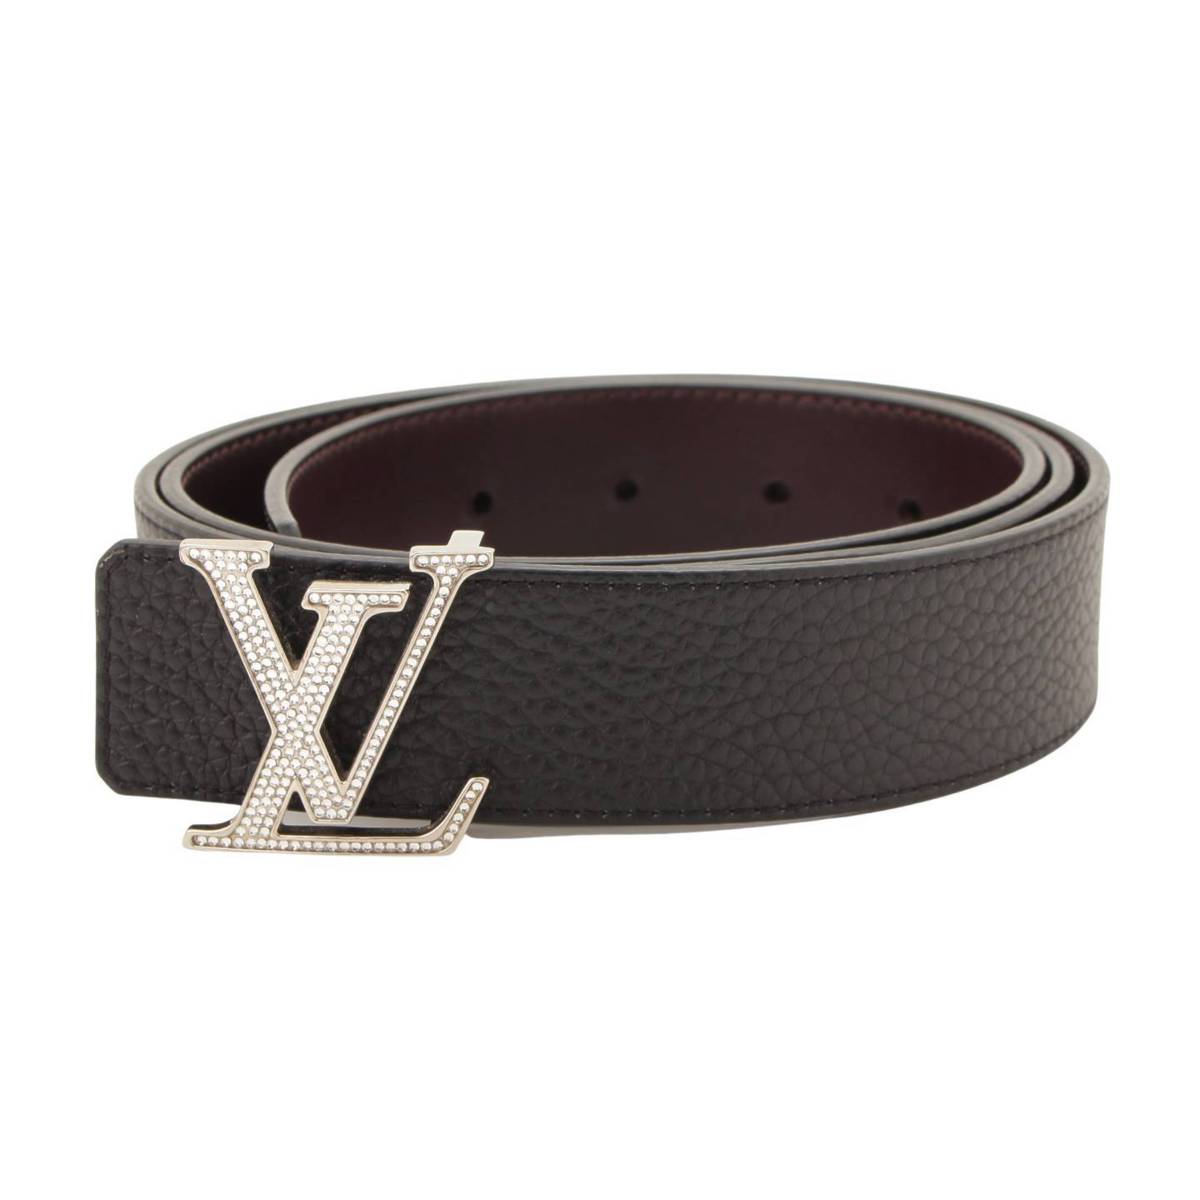 ルイヴィトン(Louis Vuitton) MY LV BELT レザー サンチュール ベルト リバーシブル N1010 ブラック×ブラウン